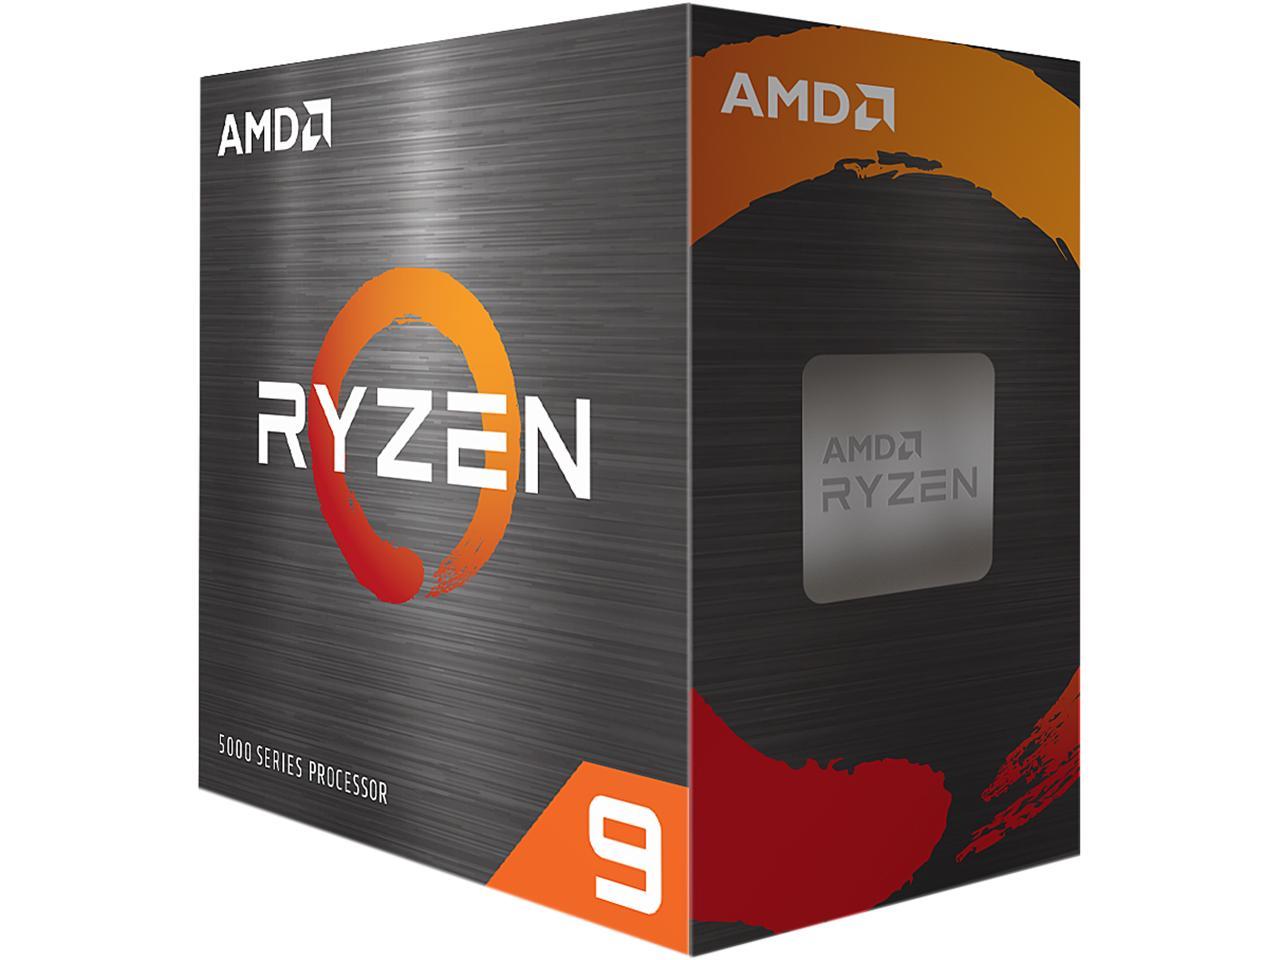 AMD RYZEN 9 5900X 12 CORE 3.7GHZ